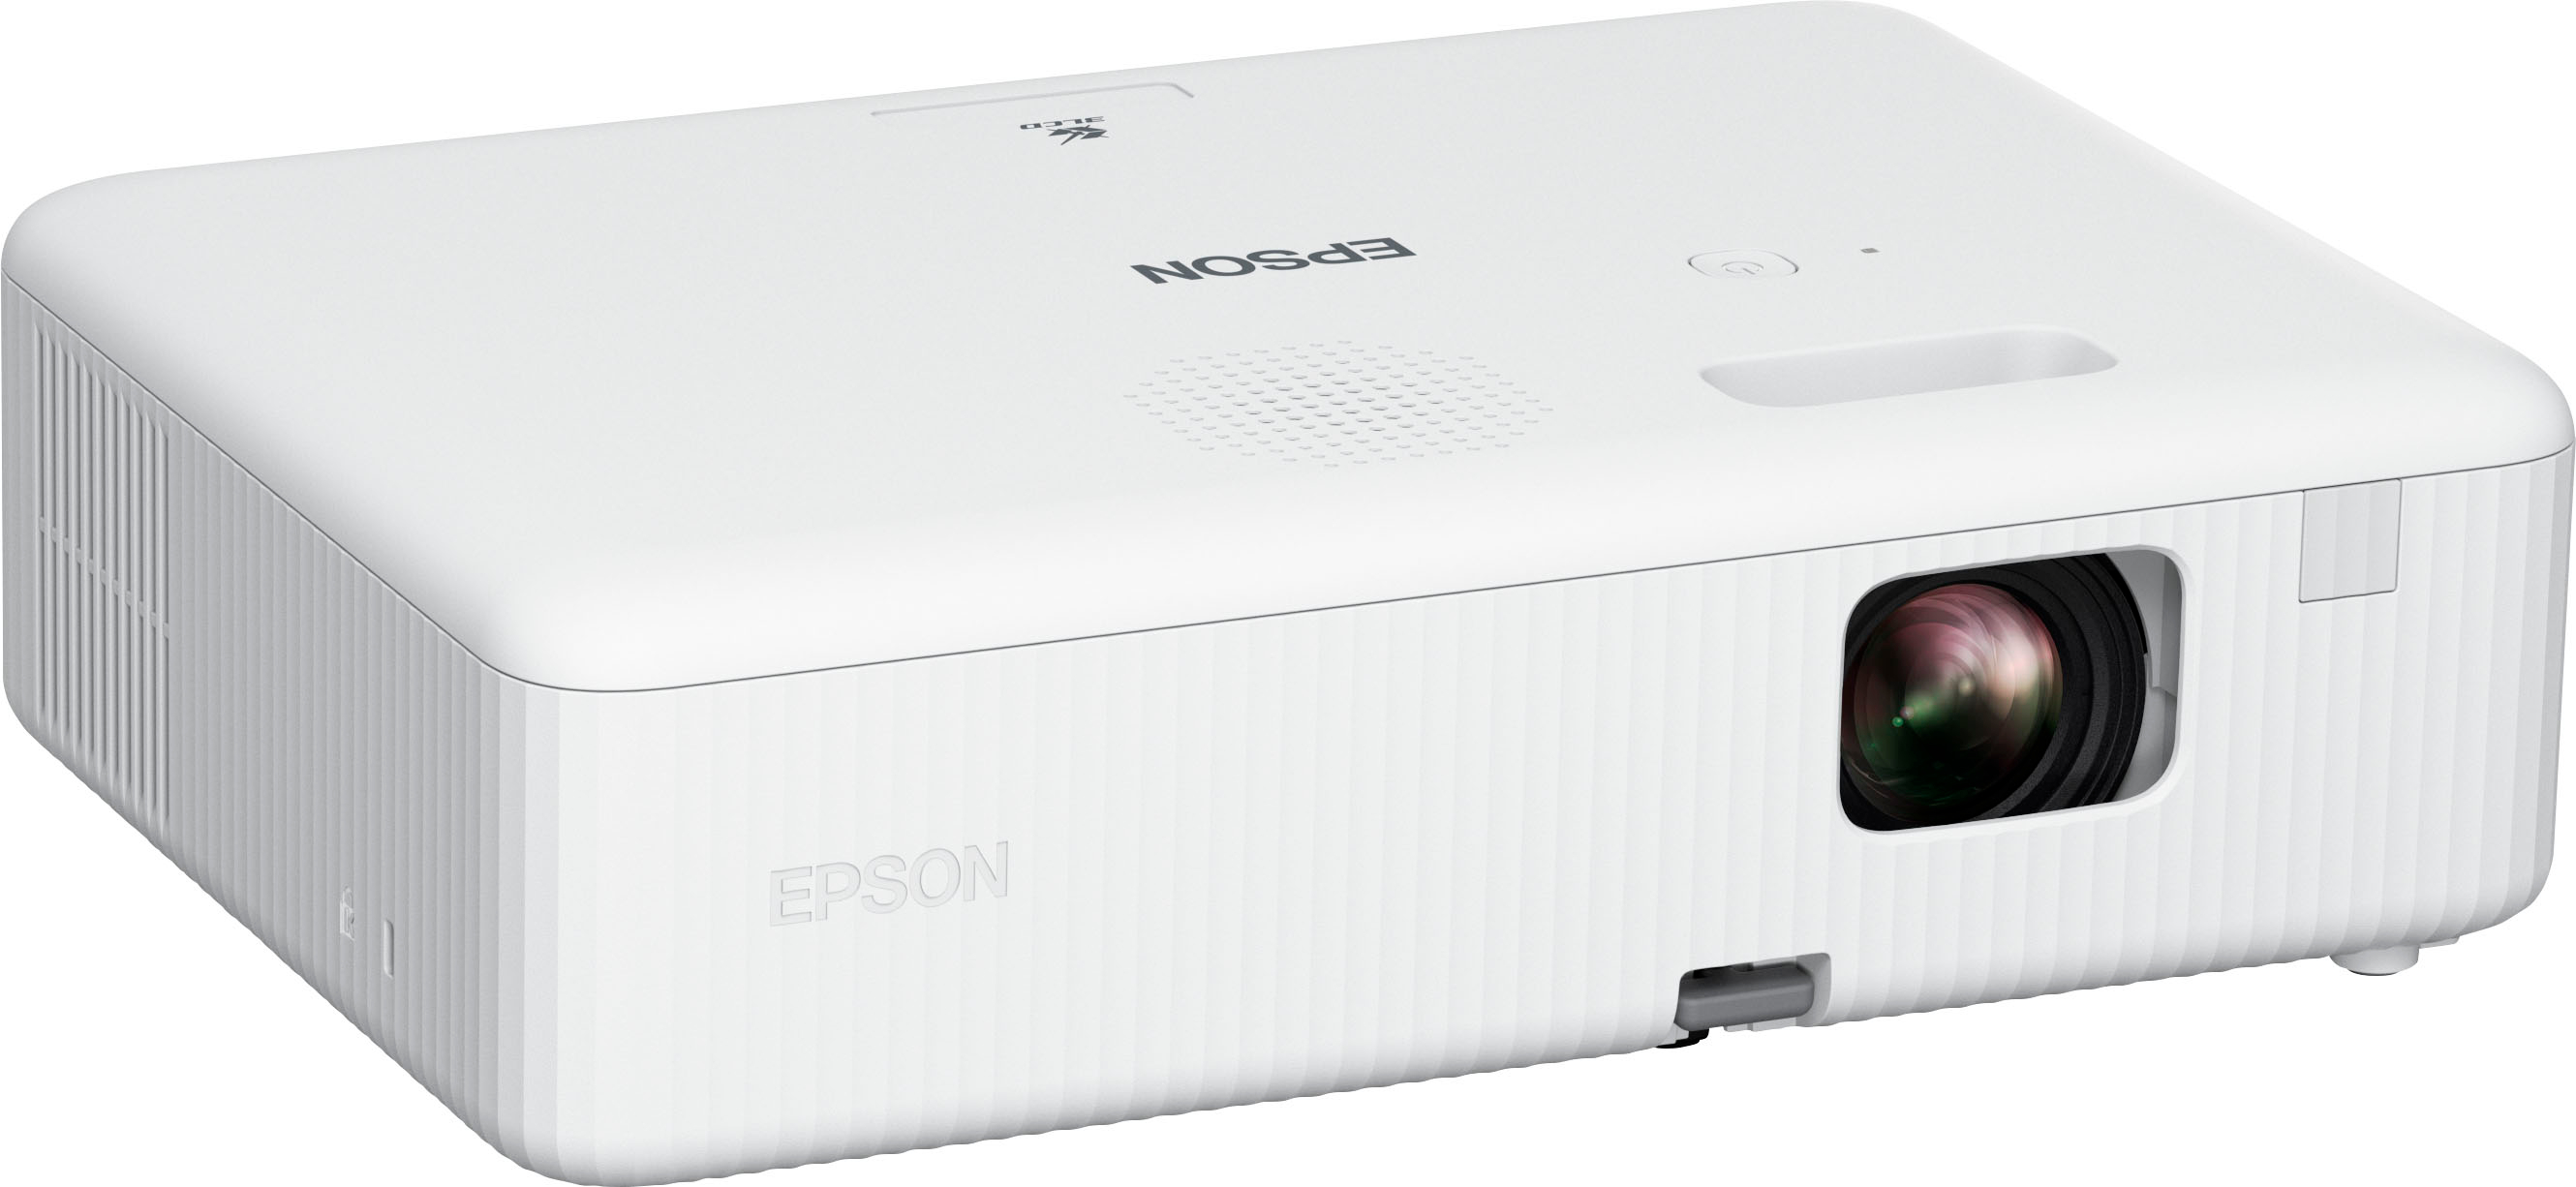 Angle View: Epson - EpiqVision™ Mini EF11 Laser Projector - Black